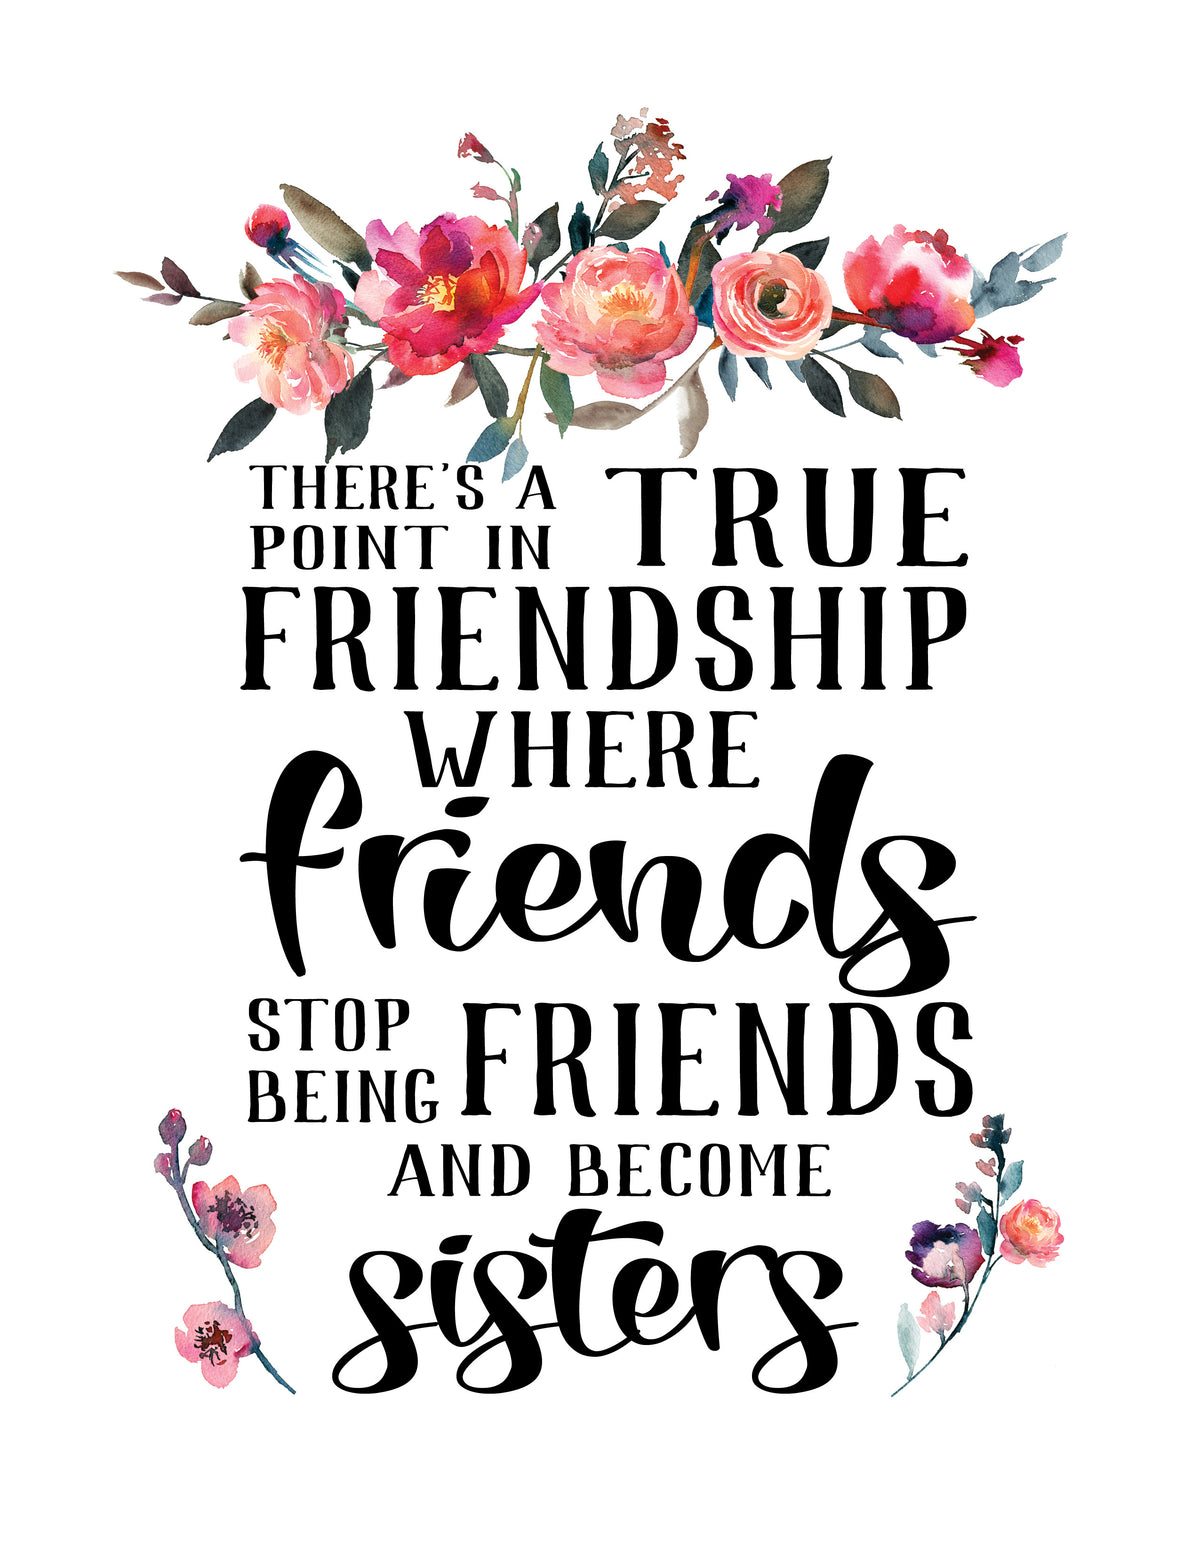 What Is True Friendship?